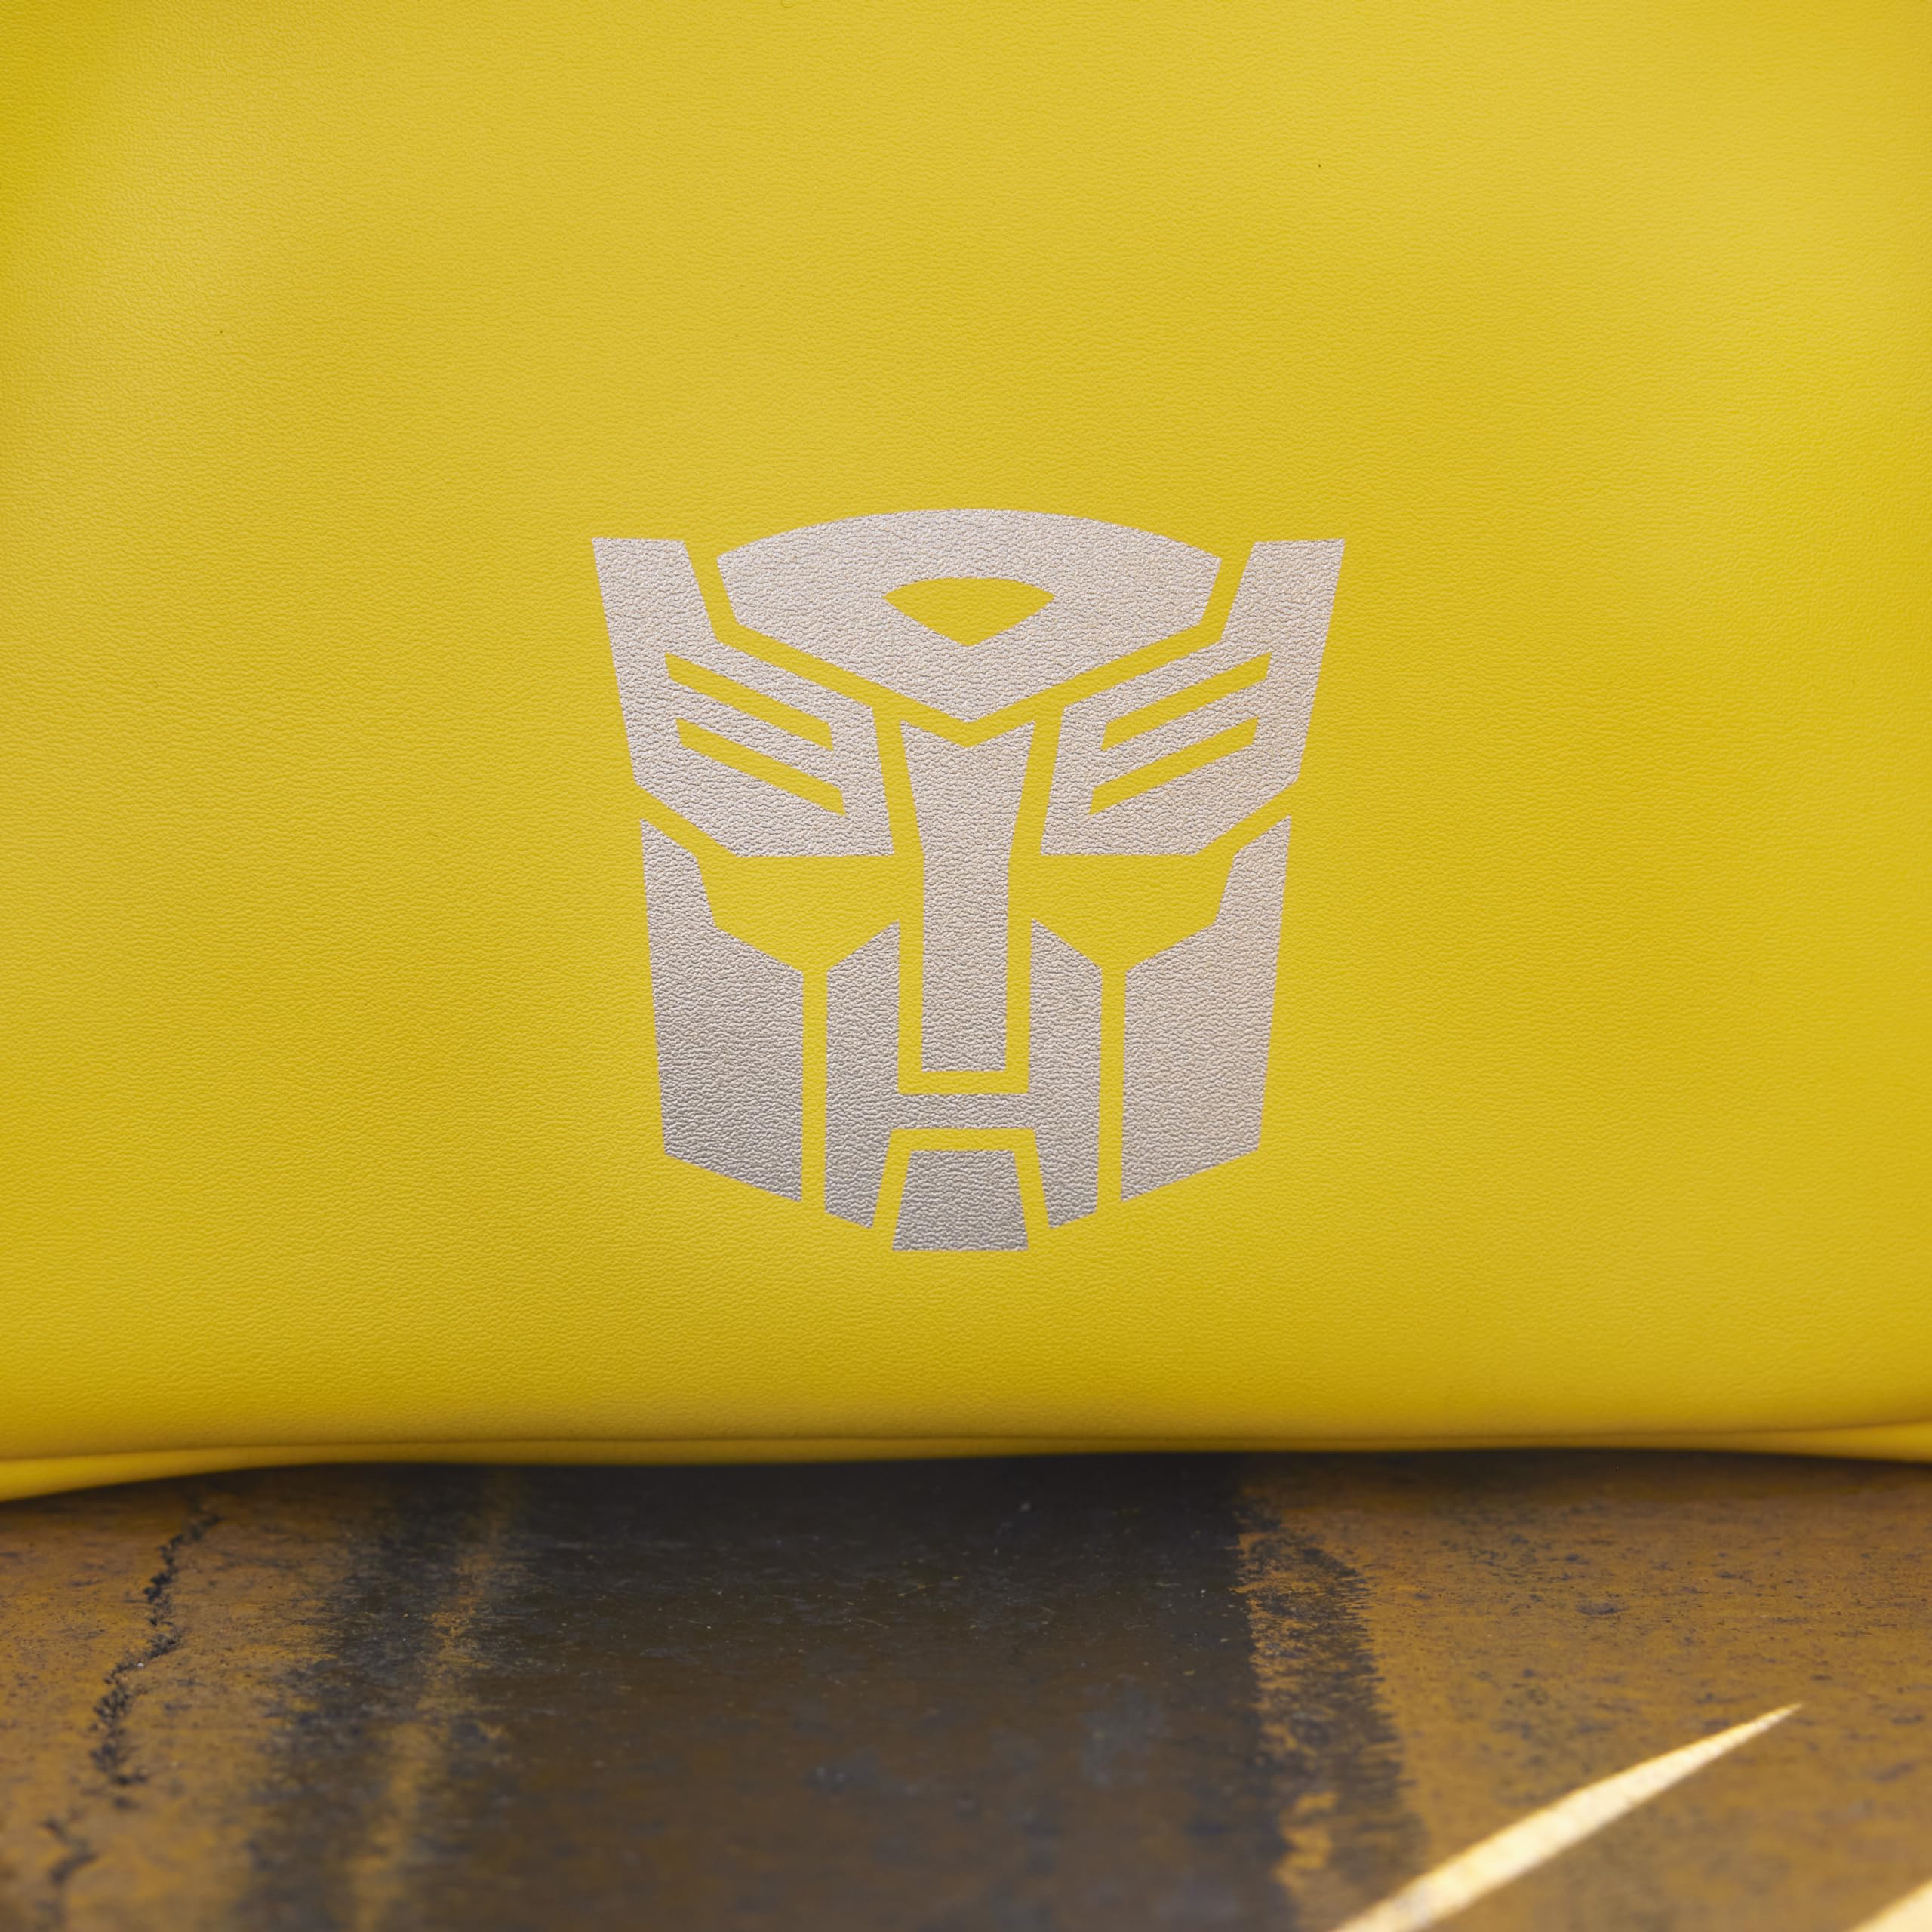 Loungefly Hasbro Transformers Bumblebee Mini-Backpack, Amazon Exclusive